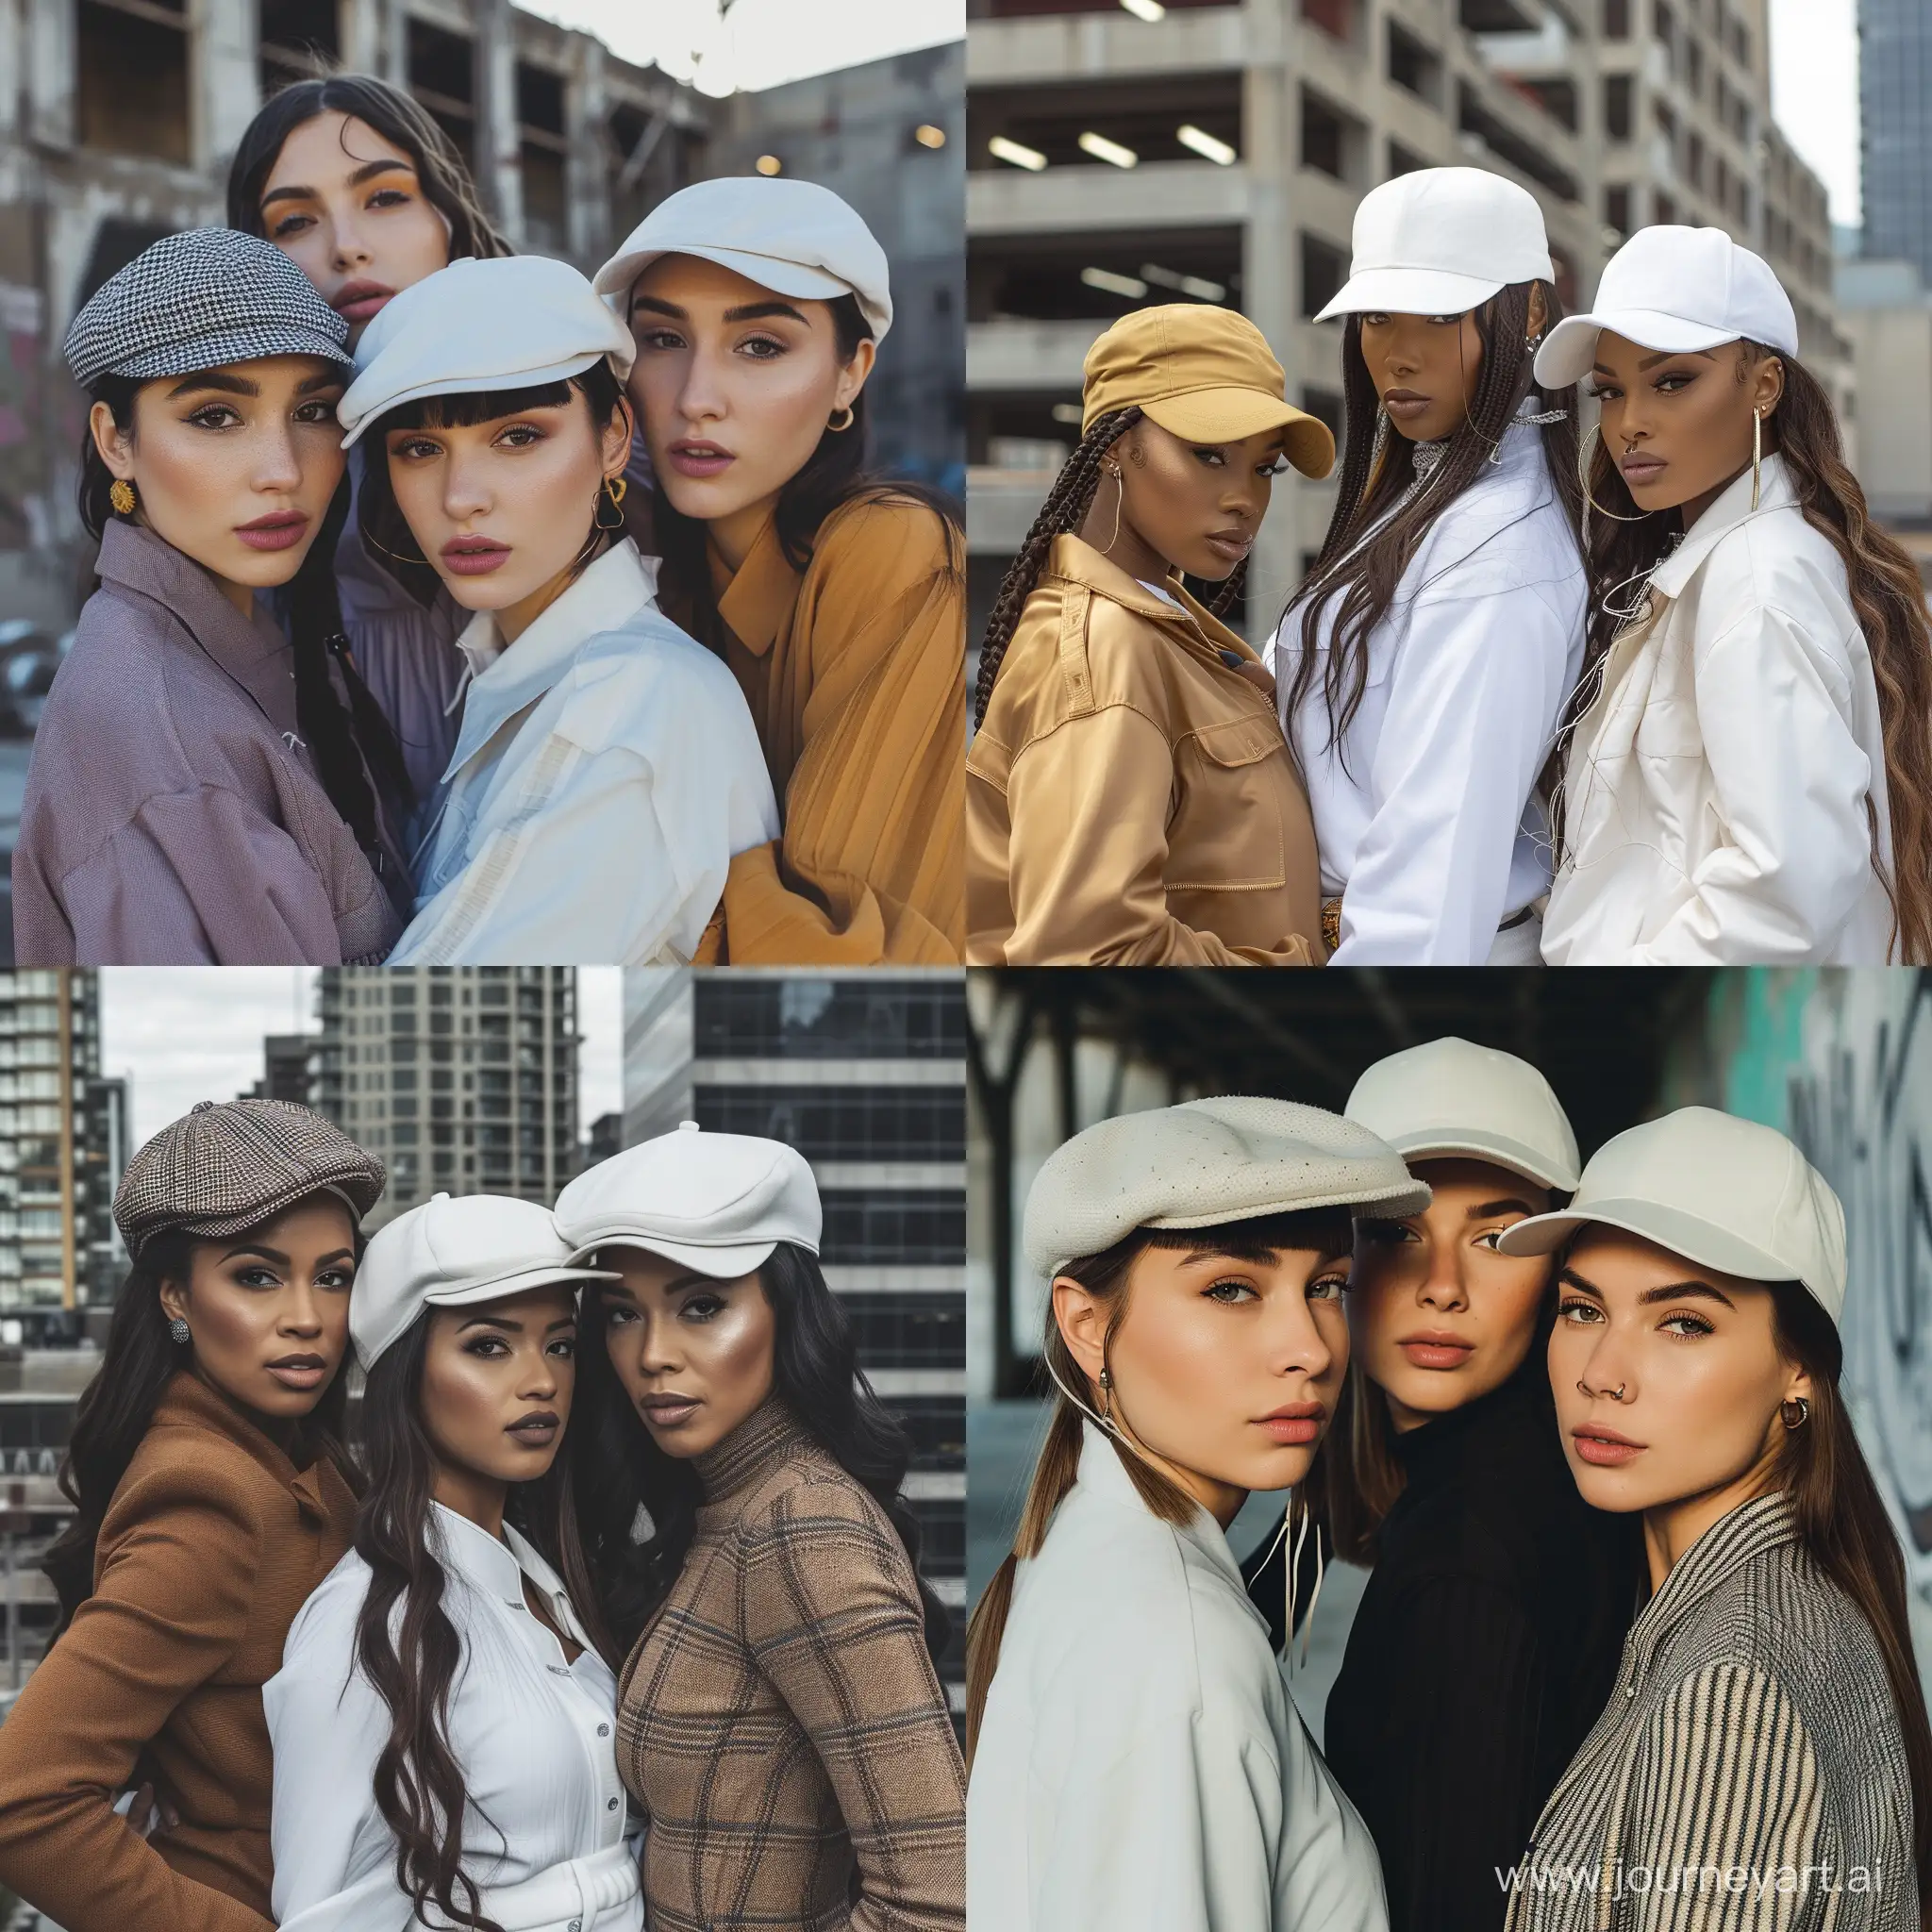 Stylish-Urban-Trio-Three-Women-in-White-Caps-and-Trendy-Urban-Attire